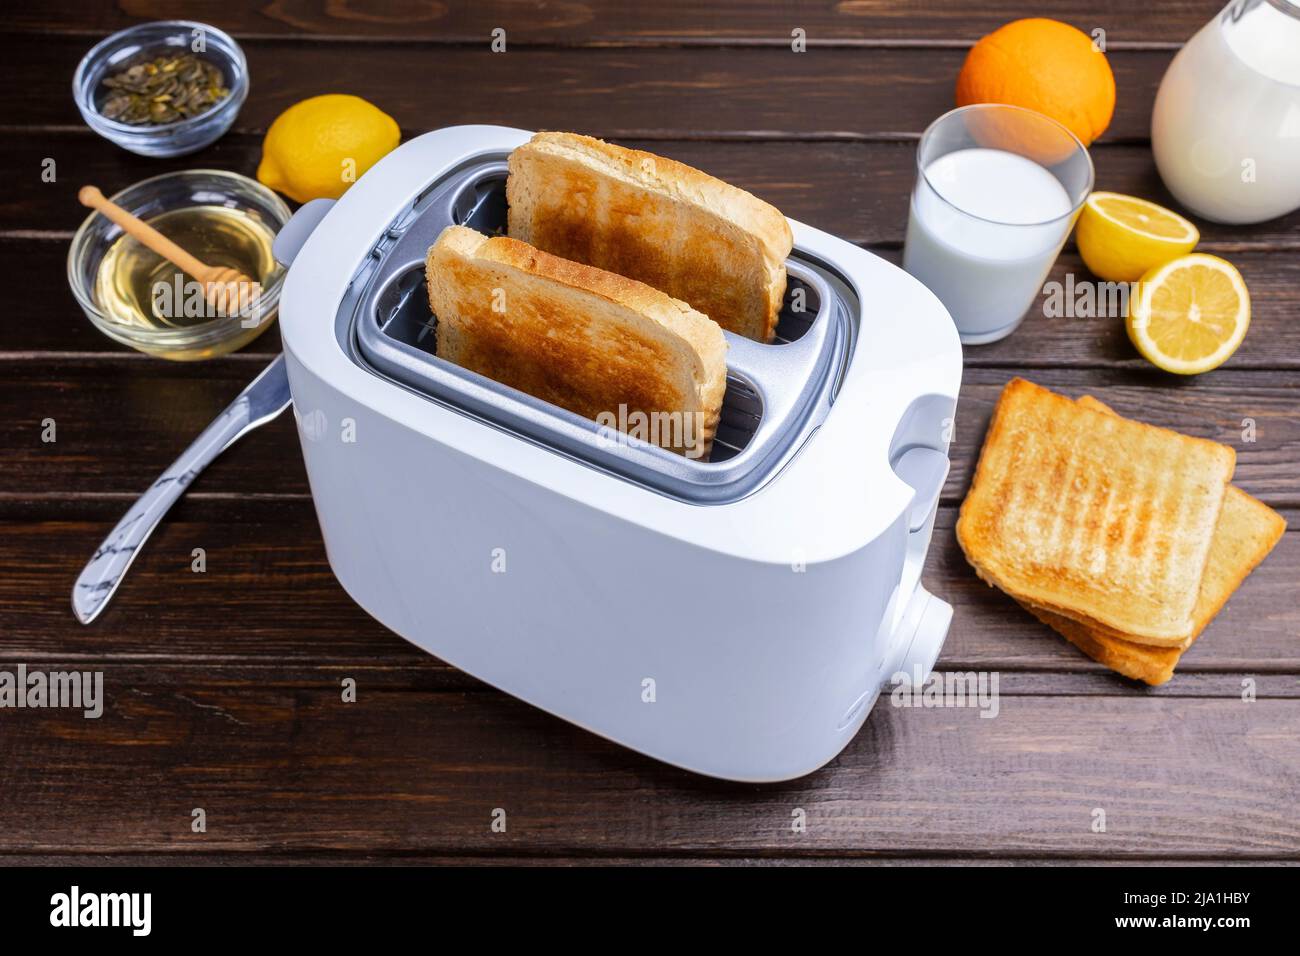 Rodajas de pan tostado del tostador. Alimentos saludables para el desayuno y concepto de tecnología de calefacción. Foto de stock